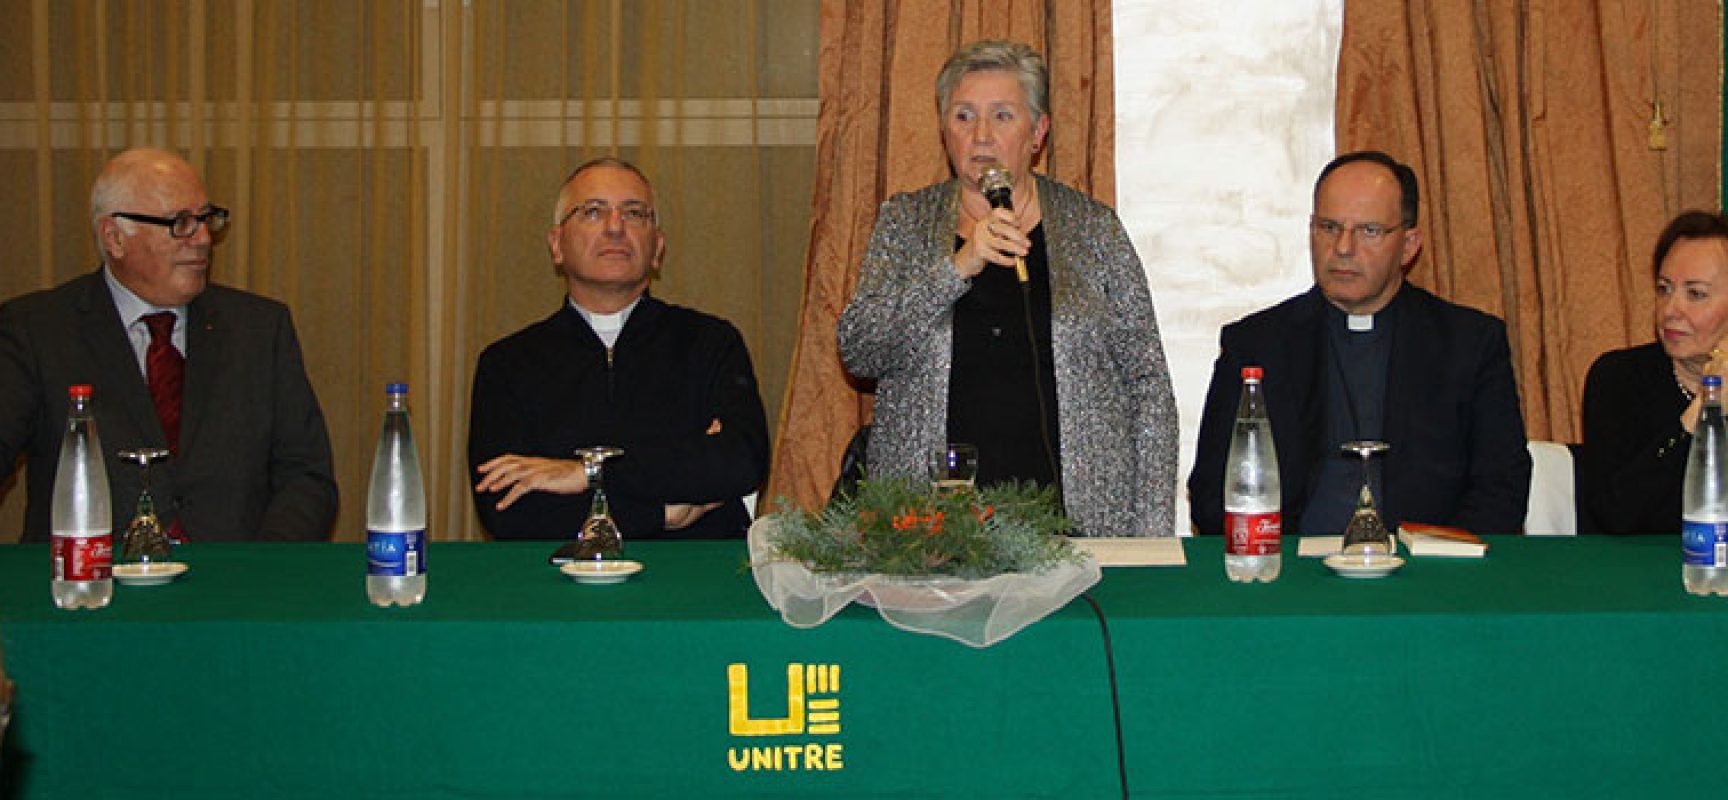 Unitre, cerimonia d’inaugurazione del nuovo anno associativo con Monsignor D’Ascenzo